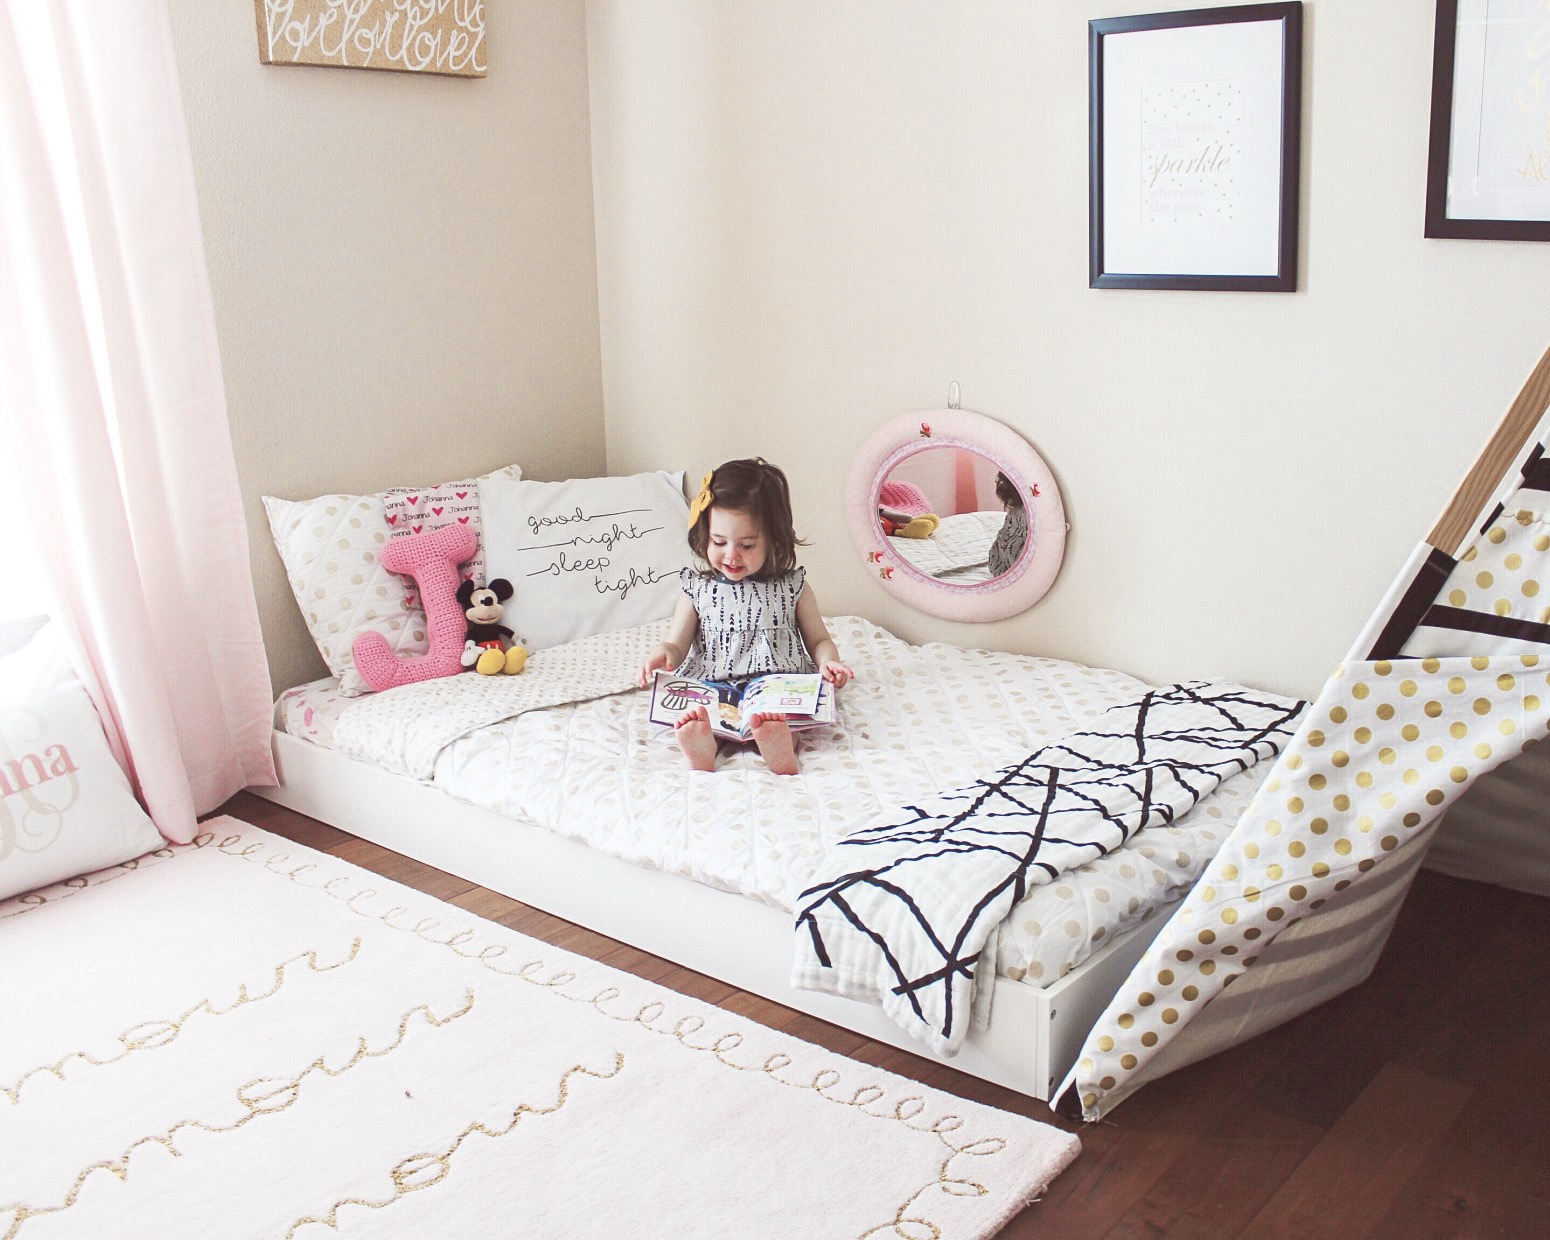 Toddler Floor Bed inspiration + diy plans